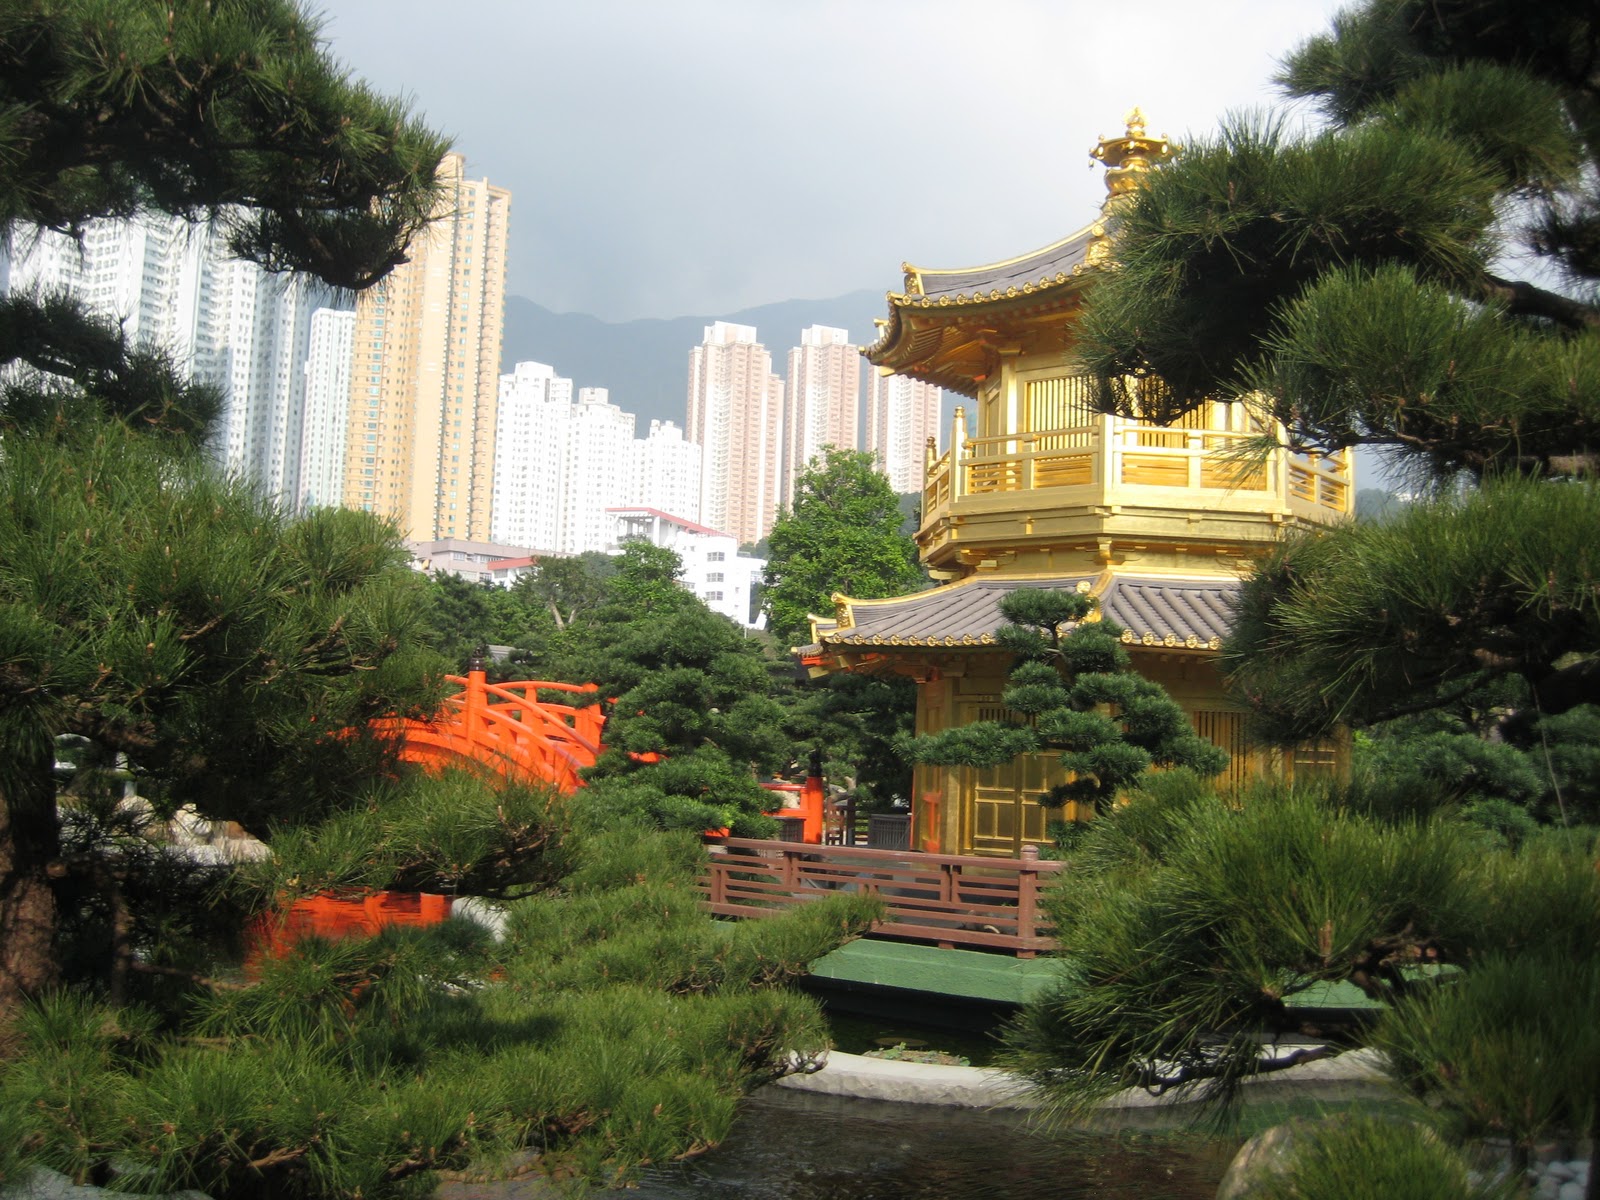 Travel: Hong Kong and Macau